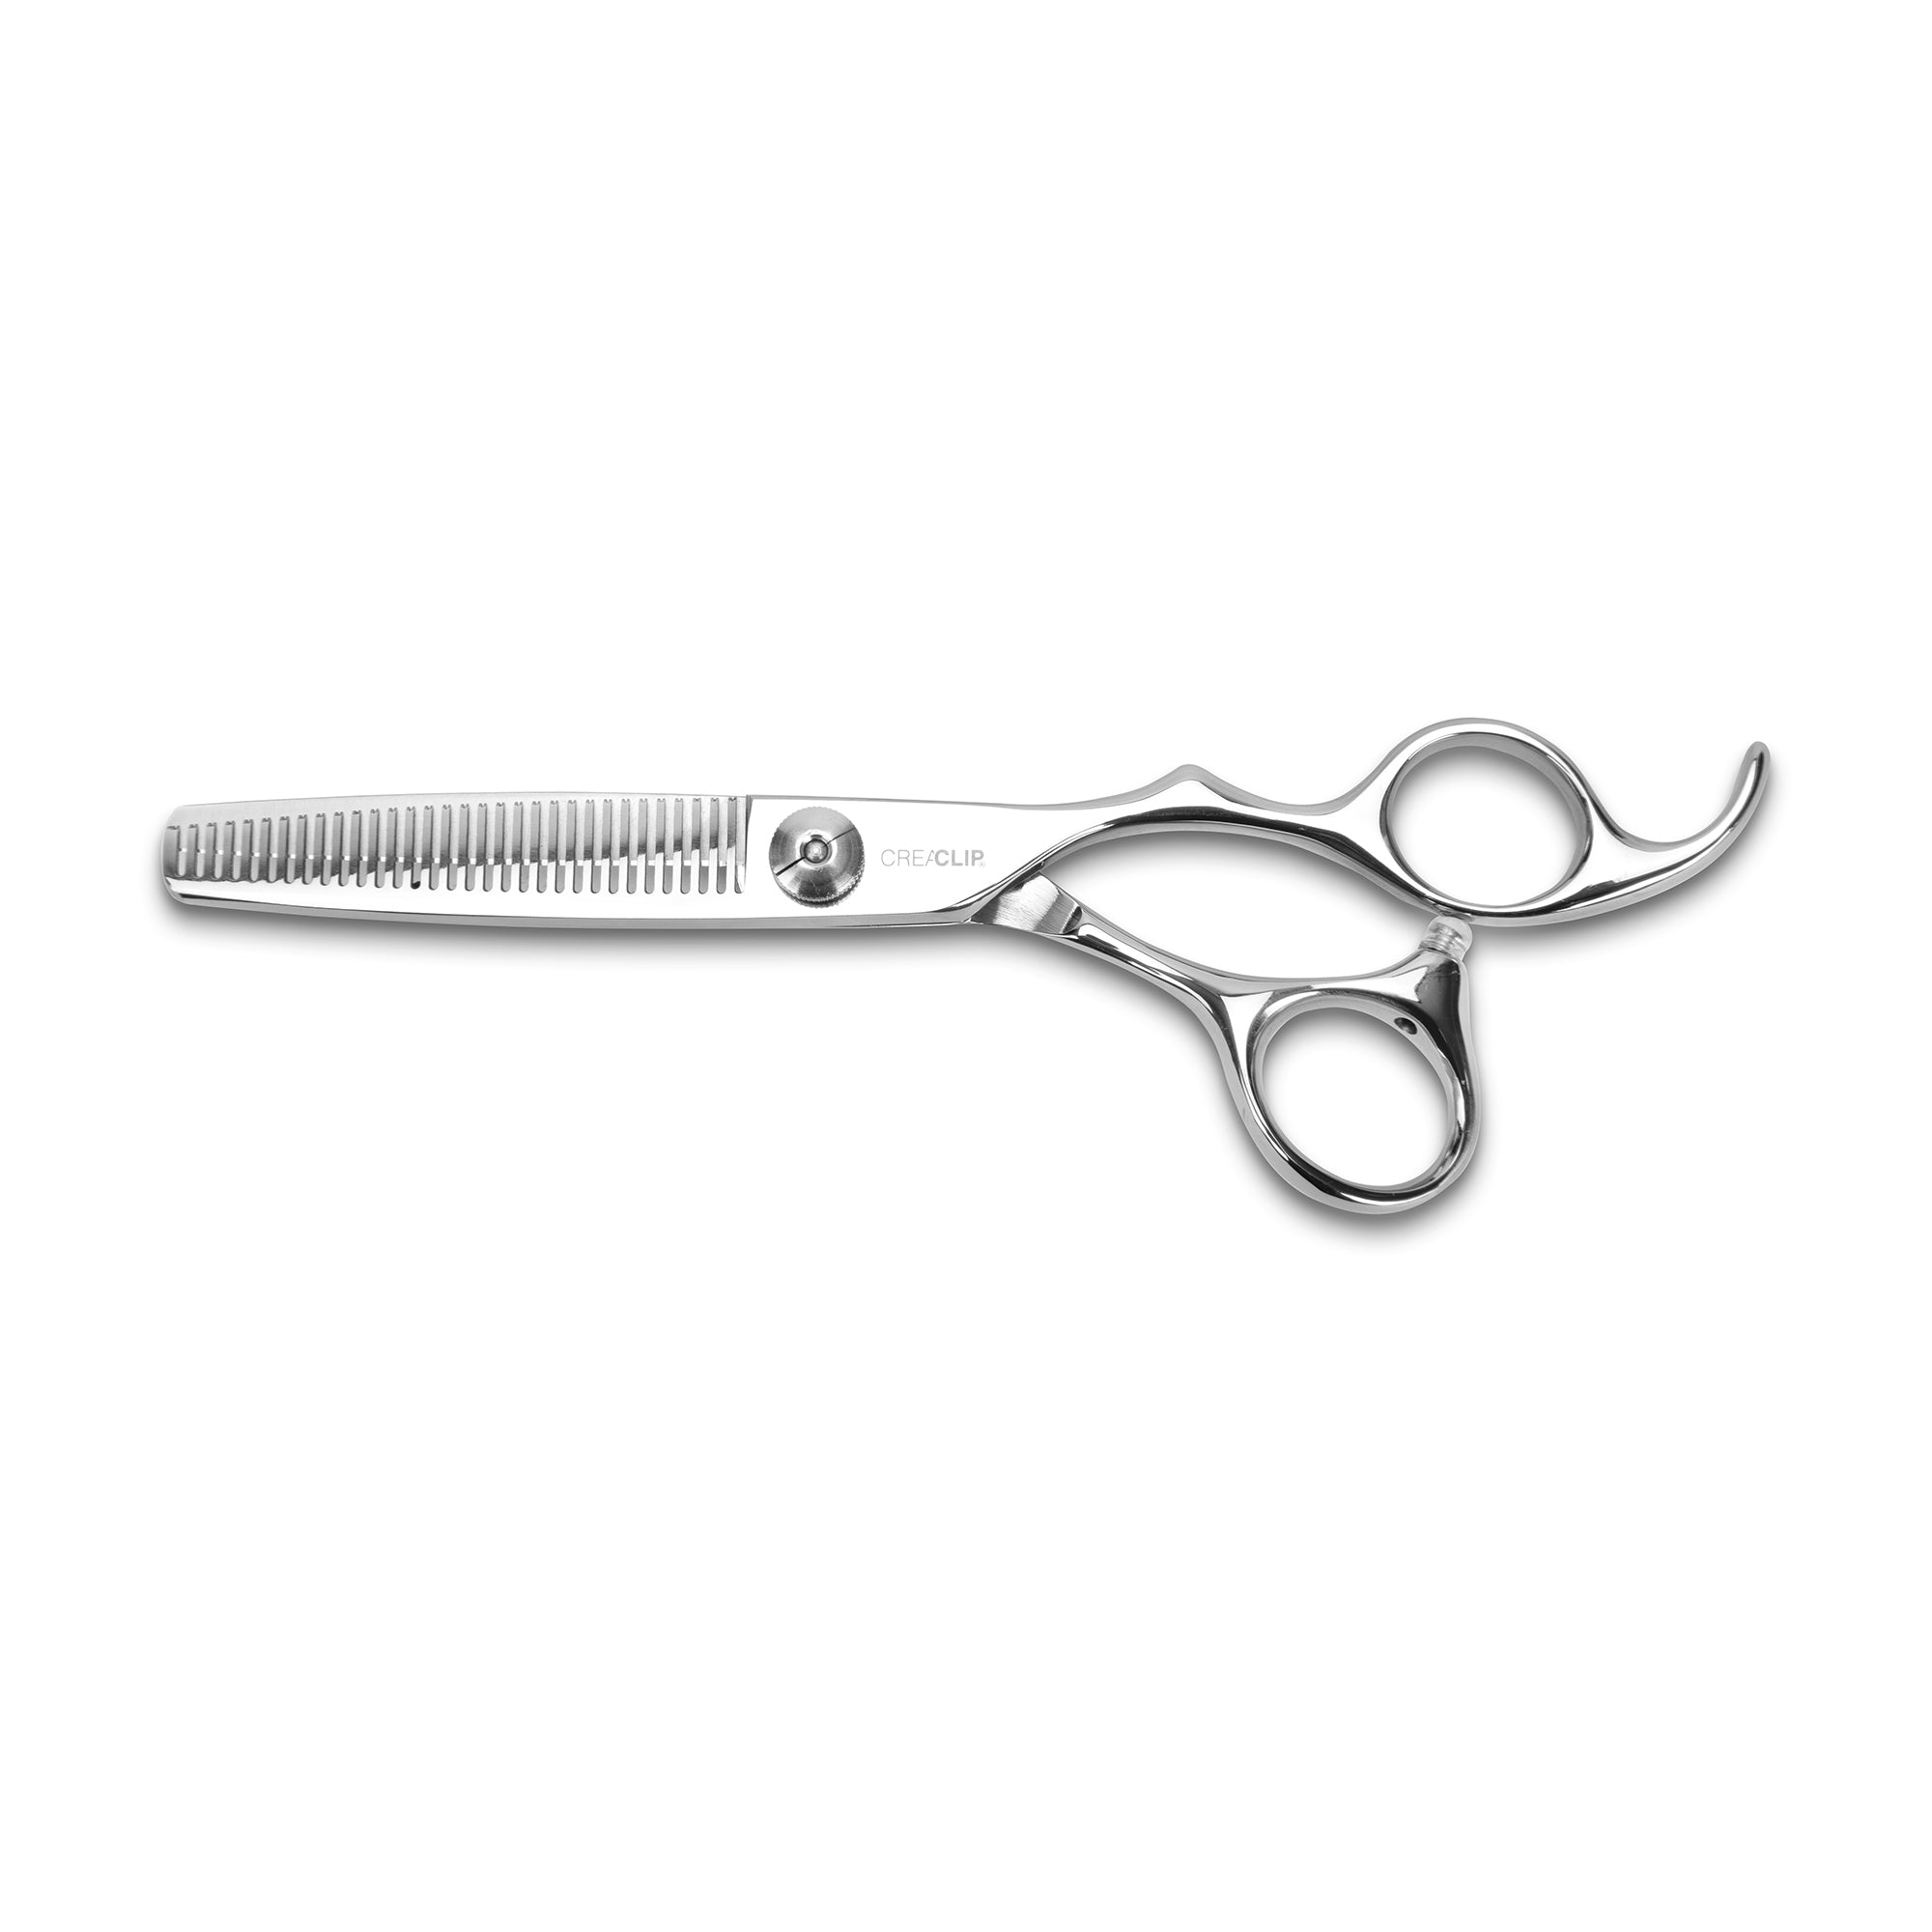 CreaClip Premium Professional Thinning Scissors